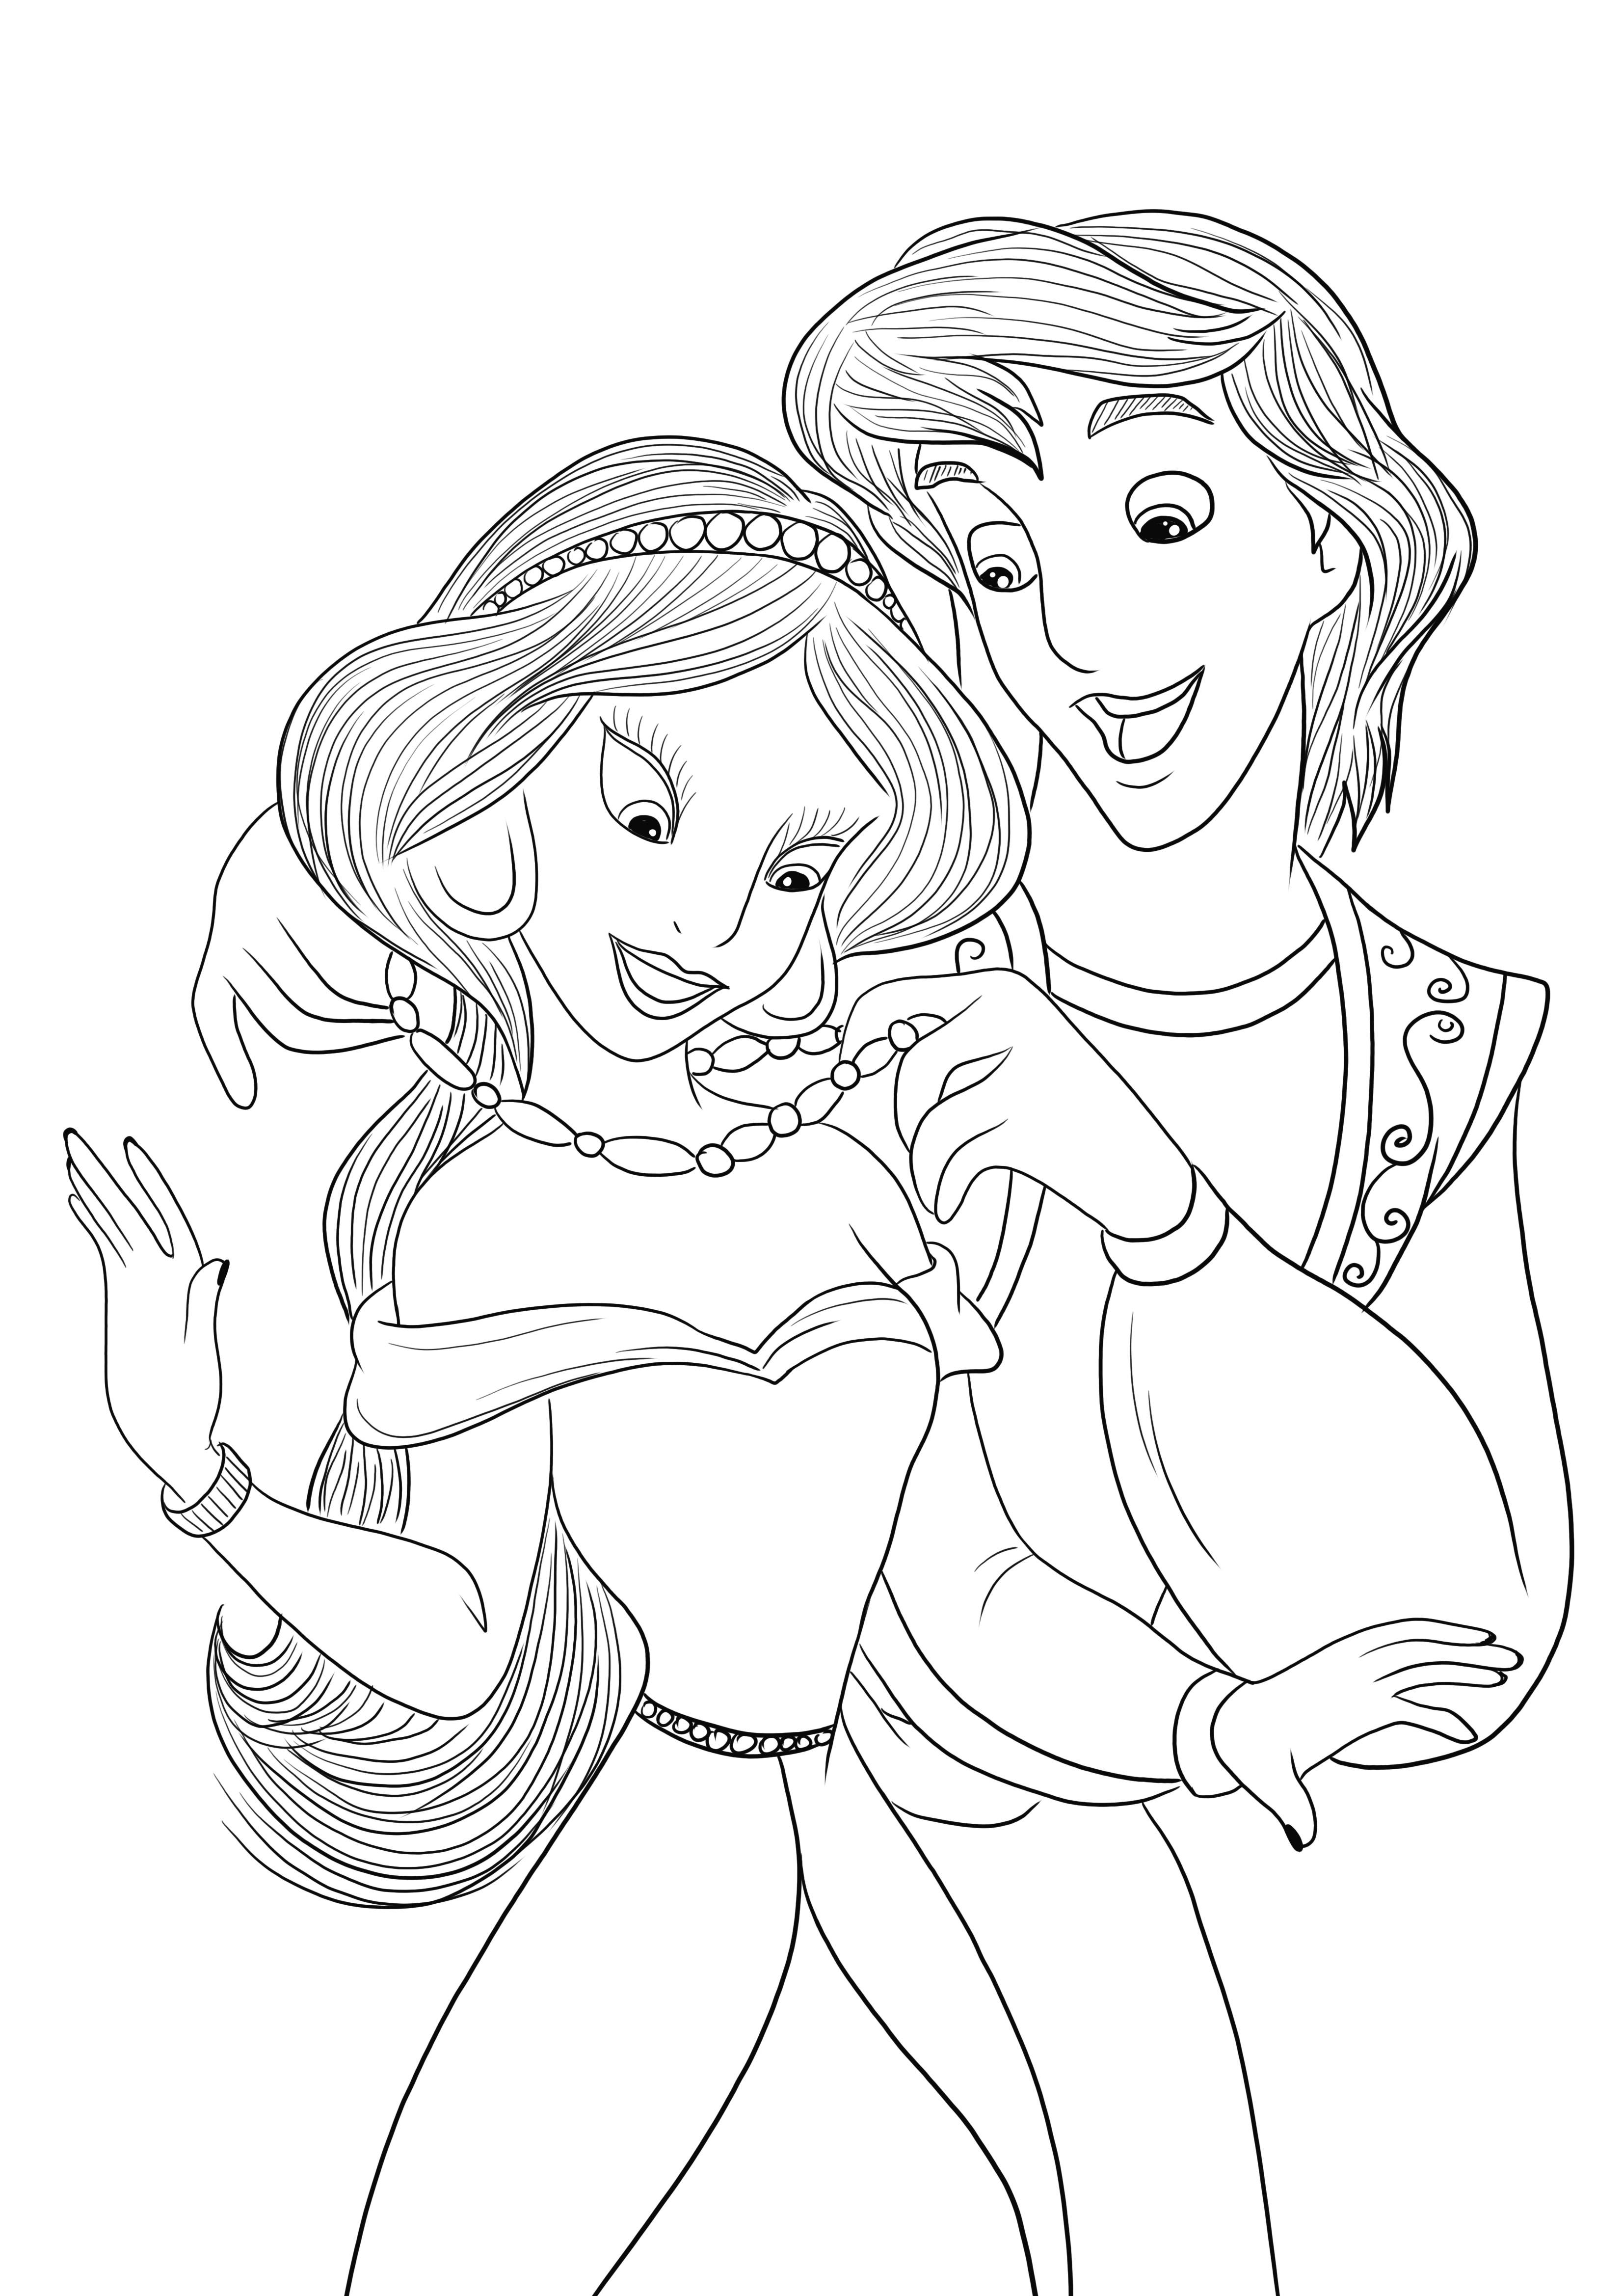 Download gratuito di immagini da colorare di Aladdin e Jasmine per i bambini da colorare